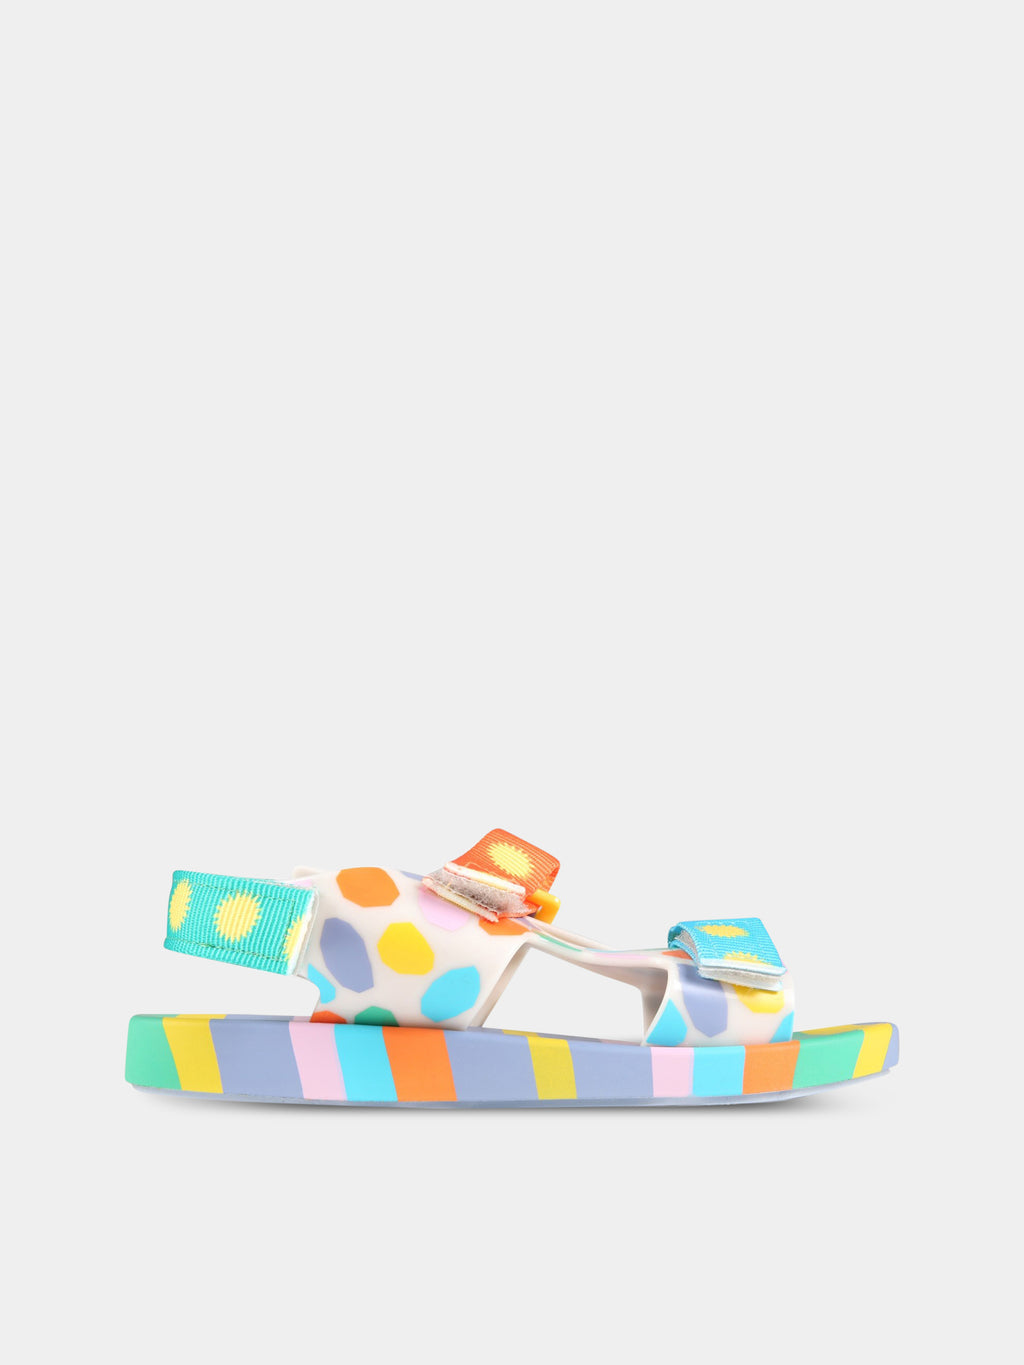 Sandali multicolor per bambini con stampe